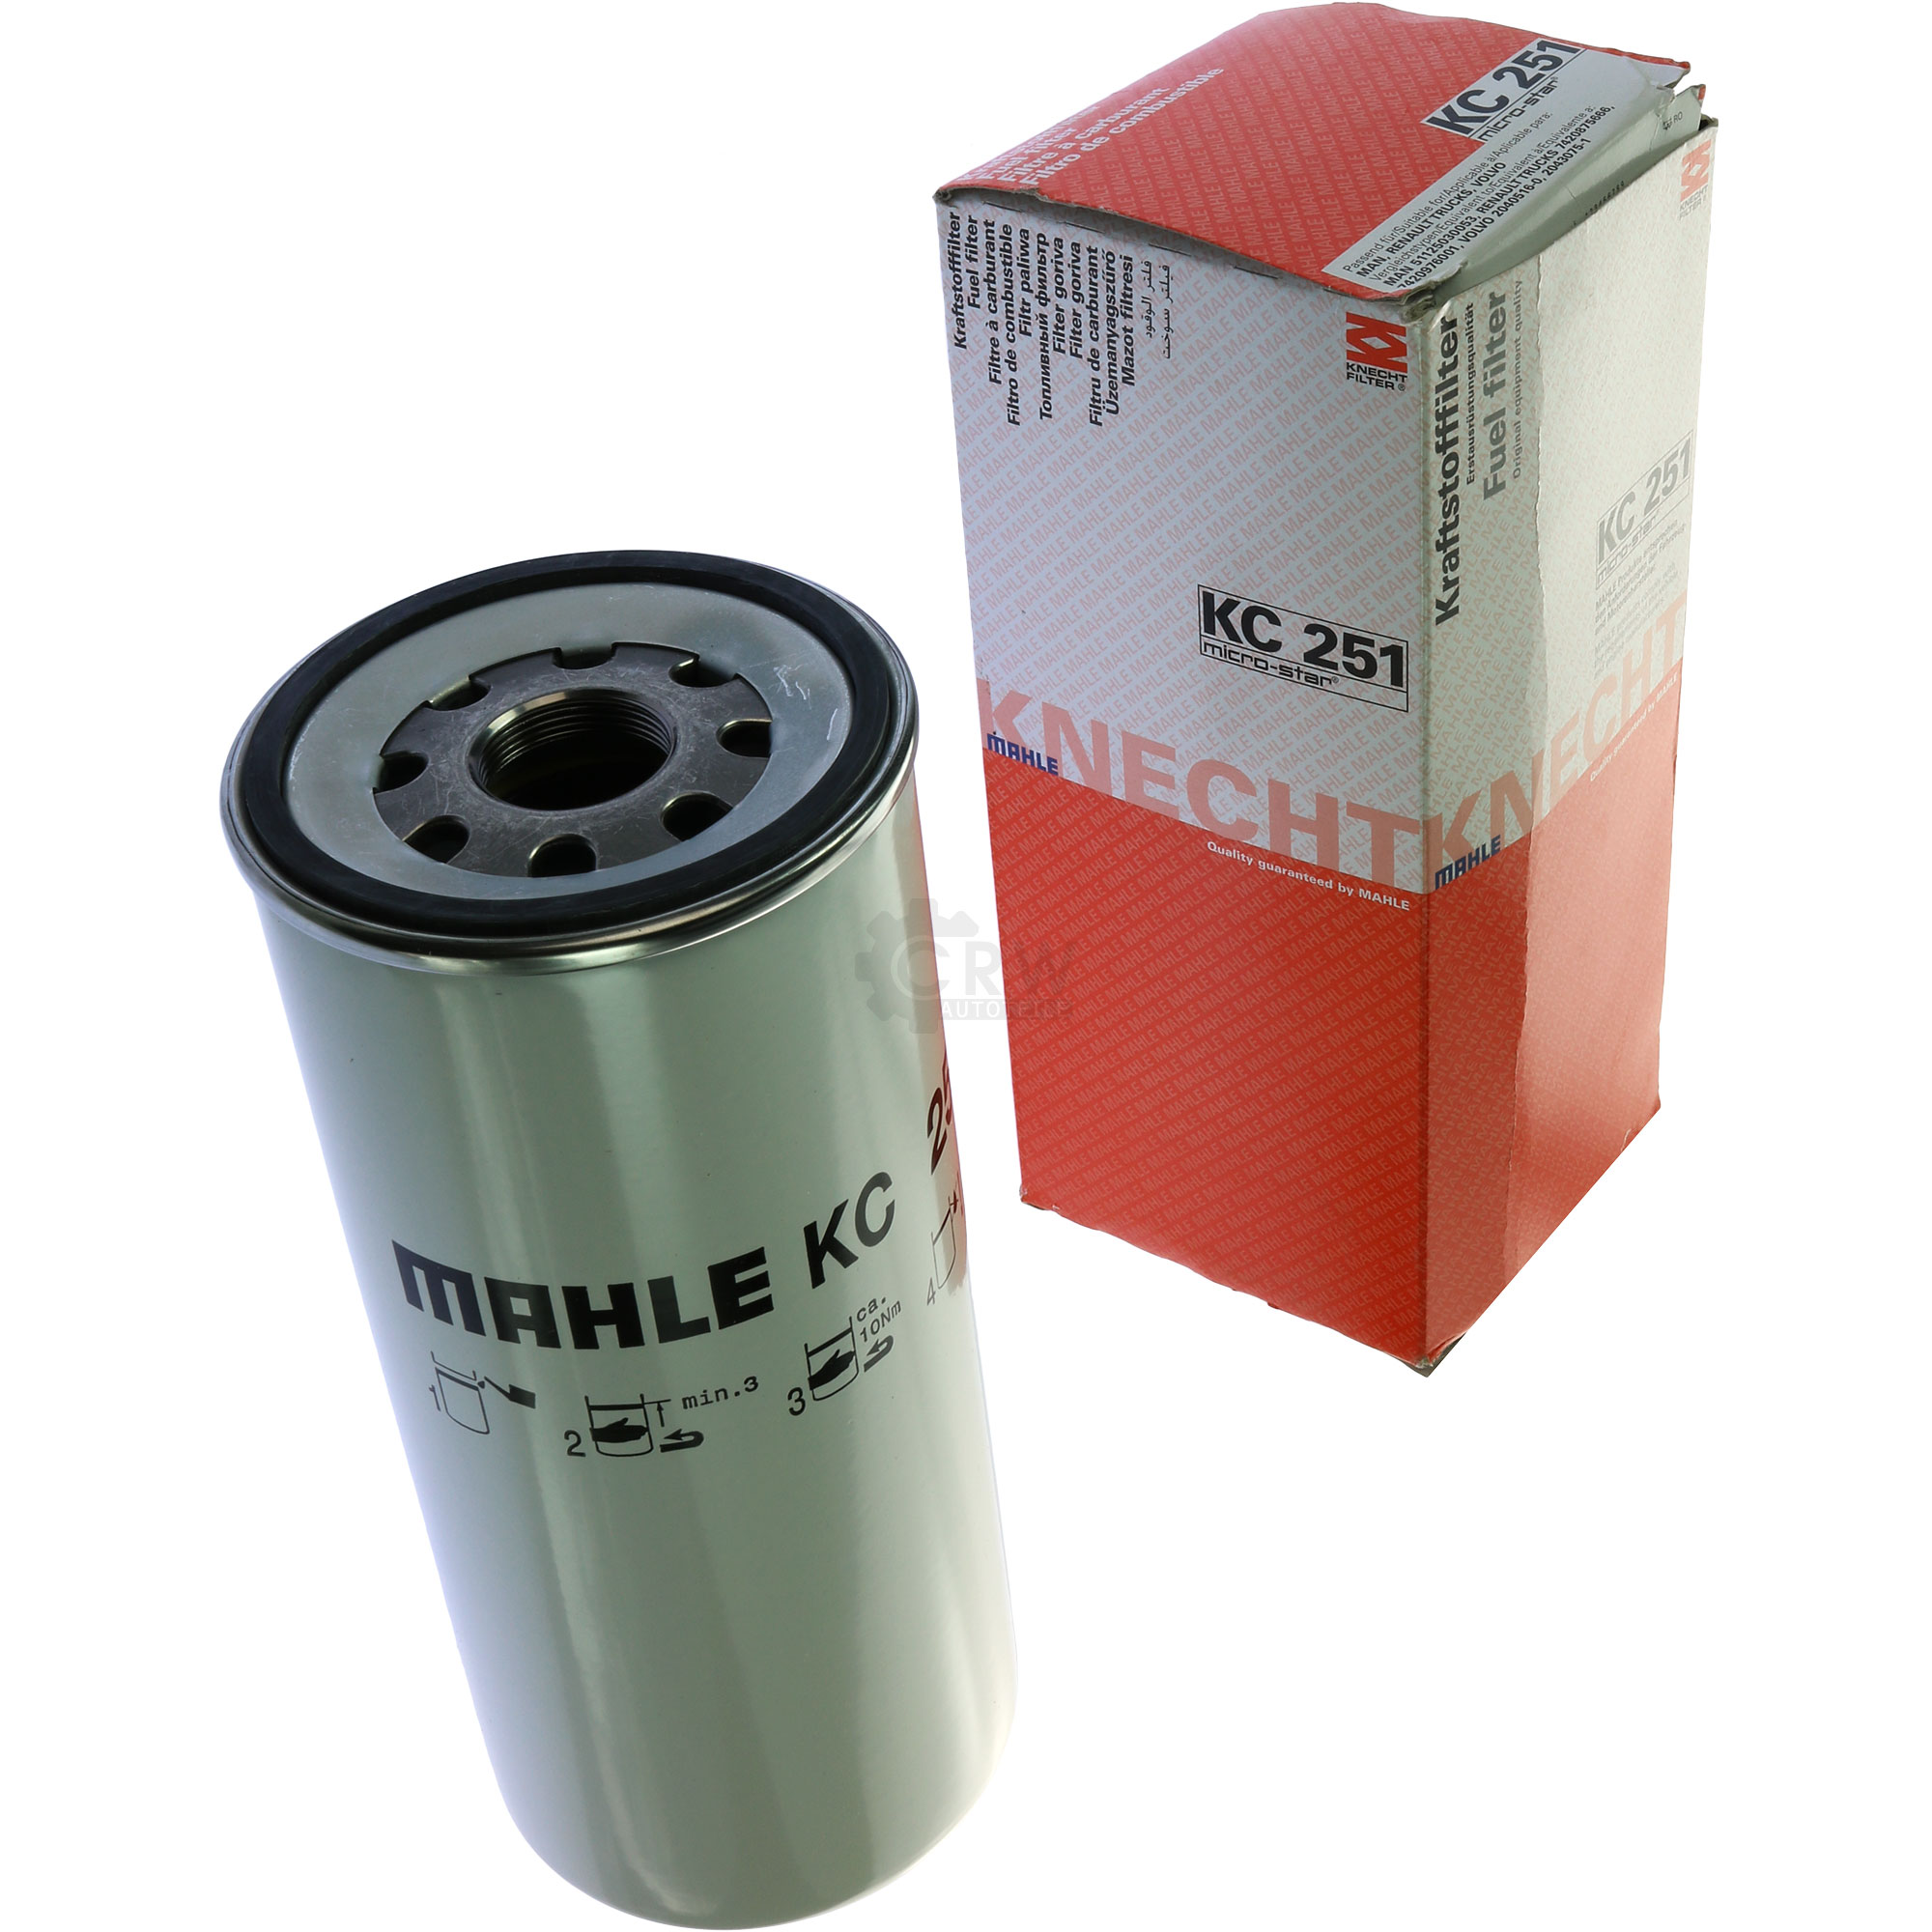 MAHLE / KNECHT KC 251 Kraftstofffilter Filter Fuel